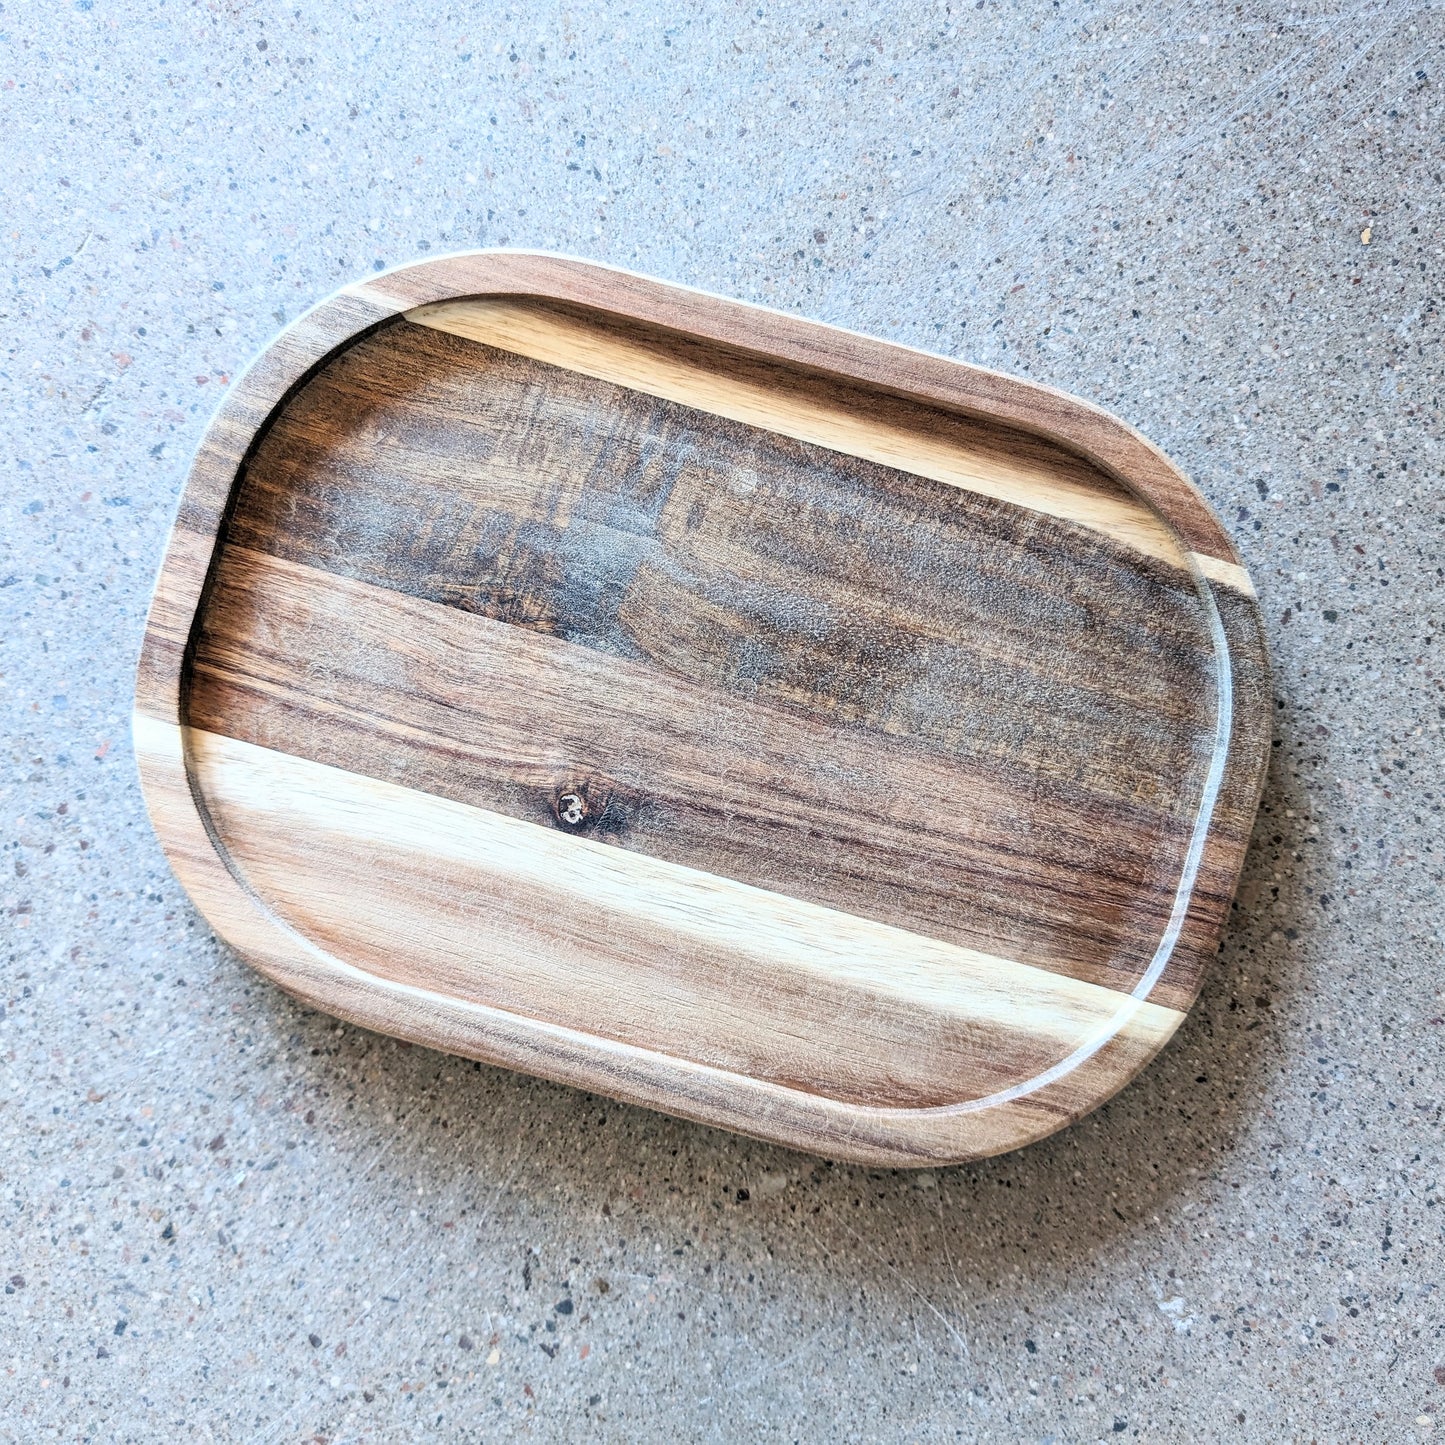 Acai wood tray